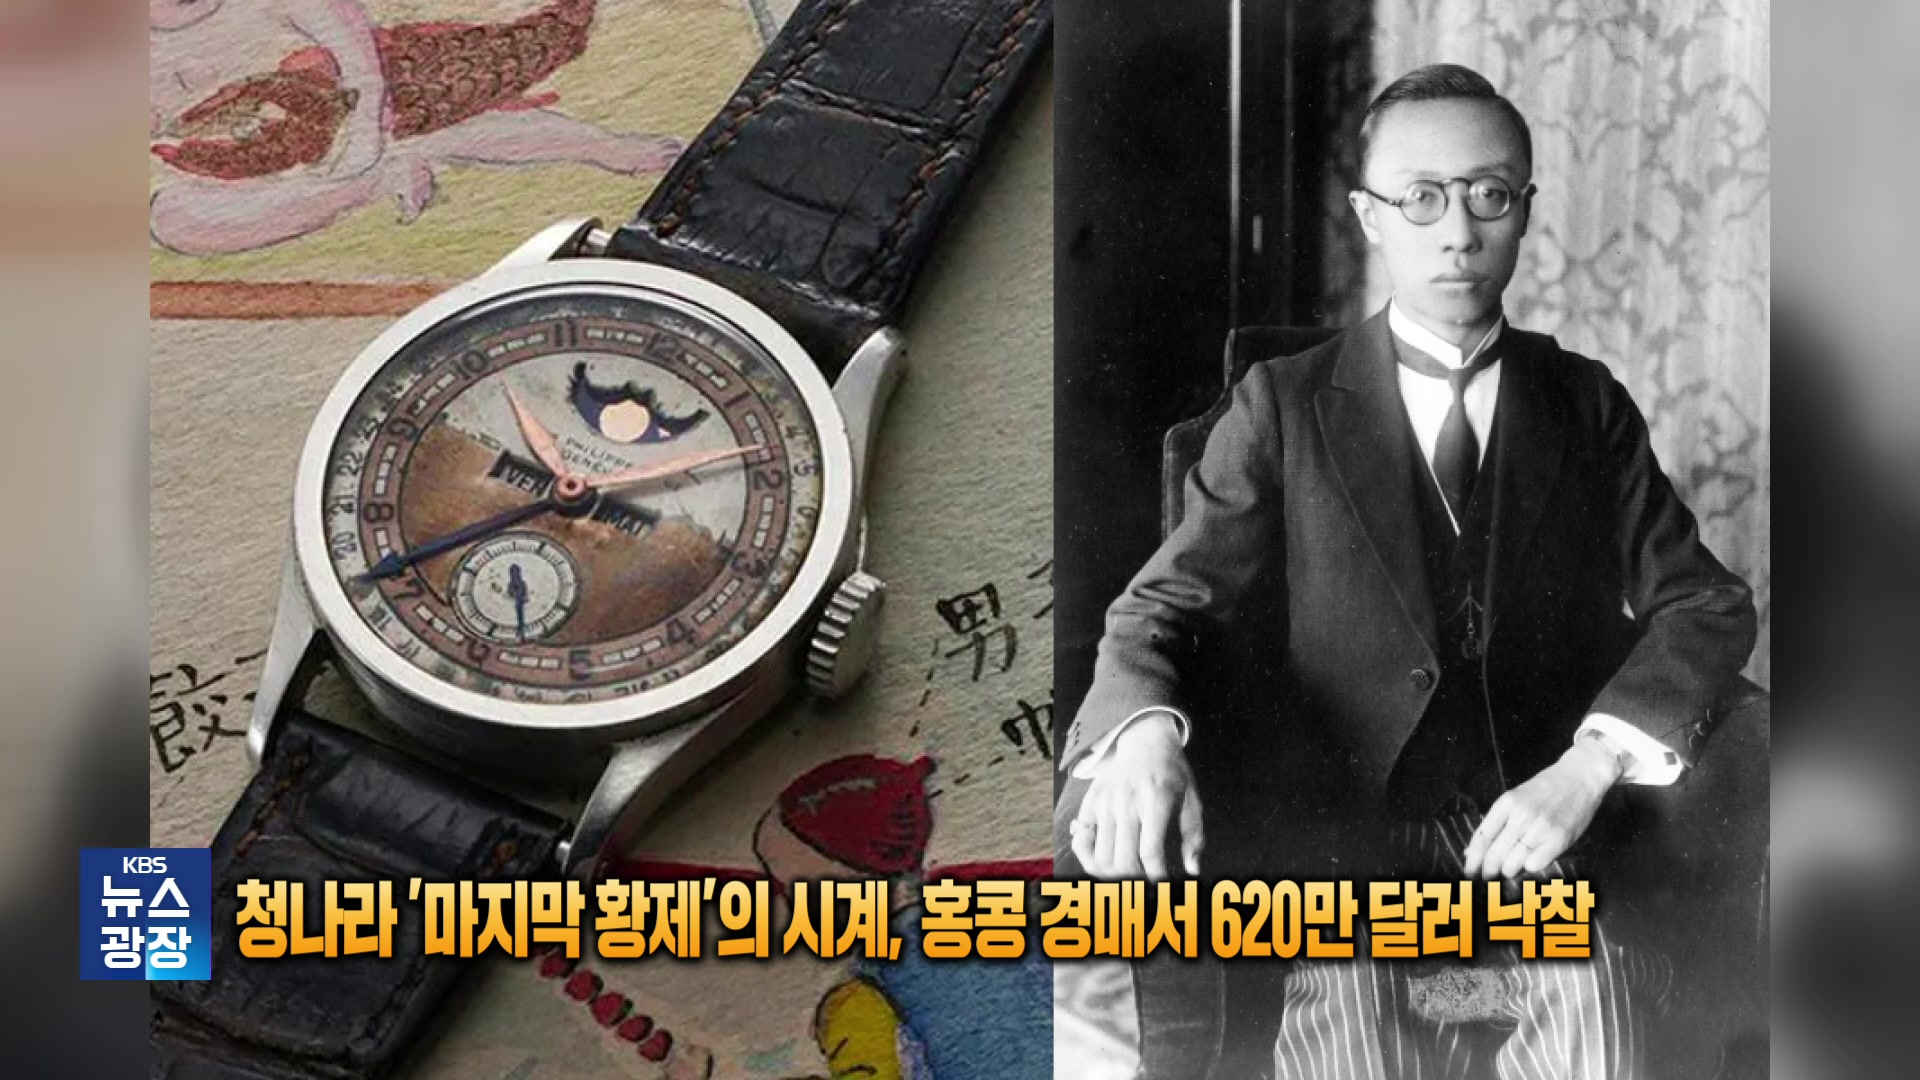 [잇슈 SNS] 청나라 ‘마지막 황제’의 시계, 홍콩 경매서 620만 달러 낙찰